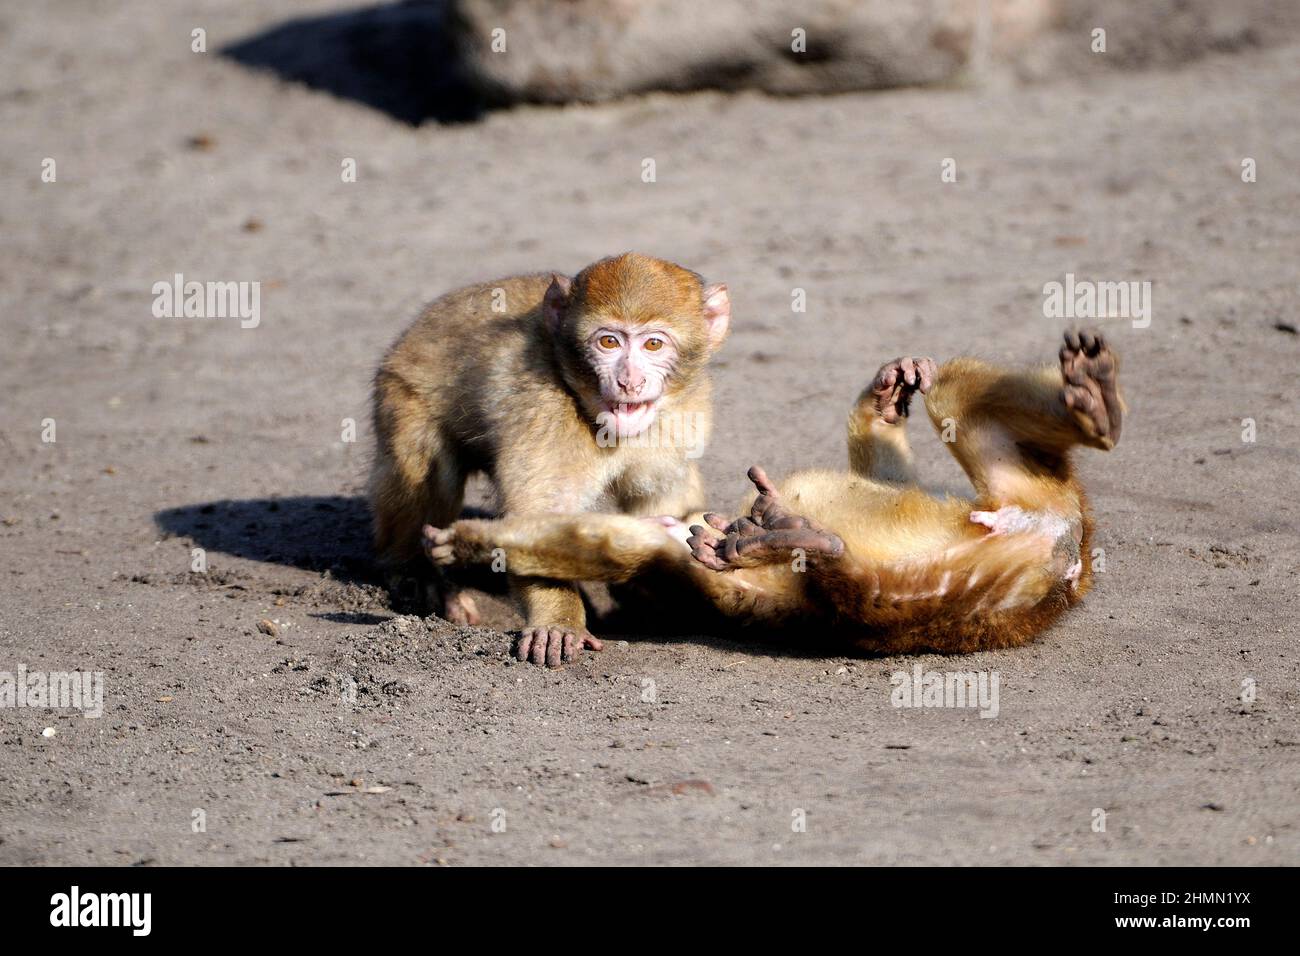 barbary ape, macaco barbario (Macaca sylvanus), dos monos pequeños jugados , Marruecos Foto de stock